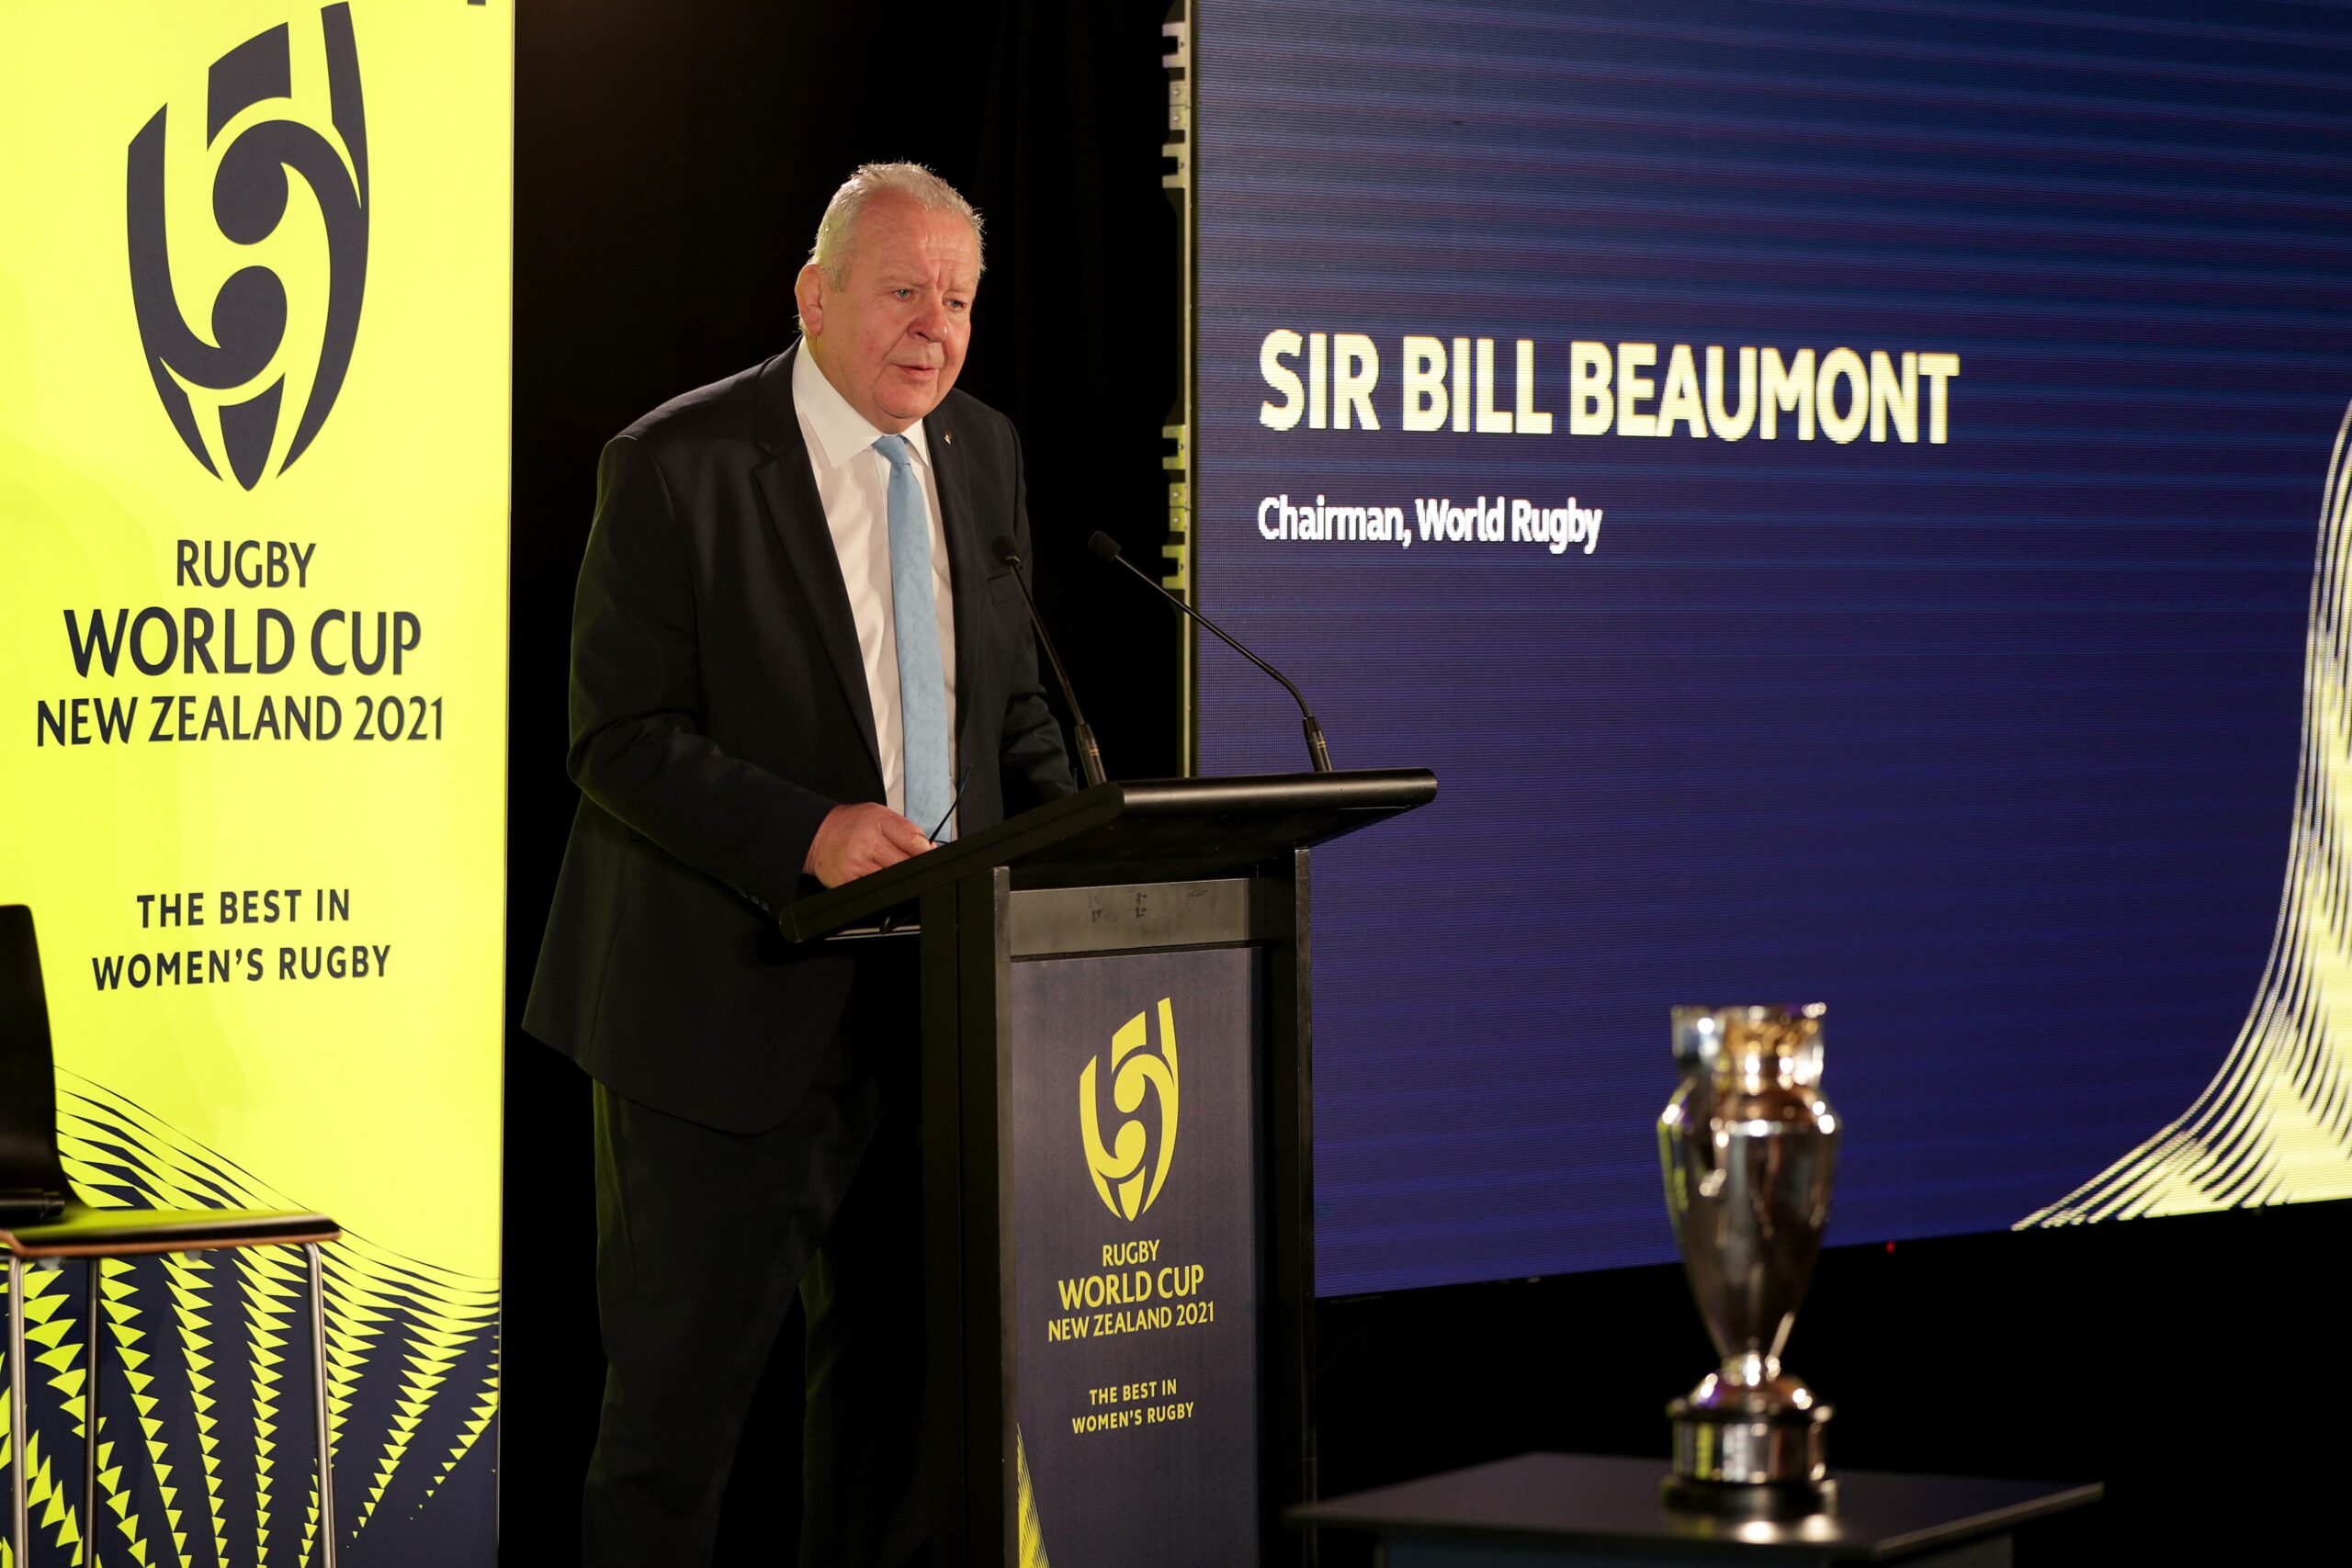 Sir bill beaumont open letter regarding player safety